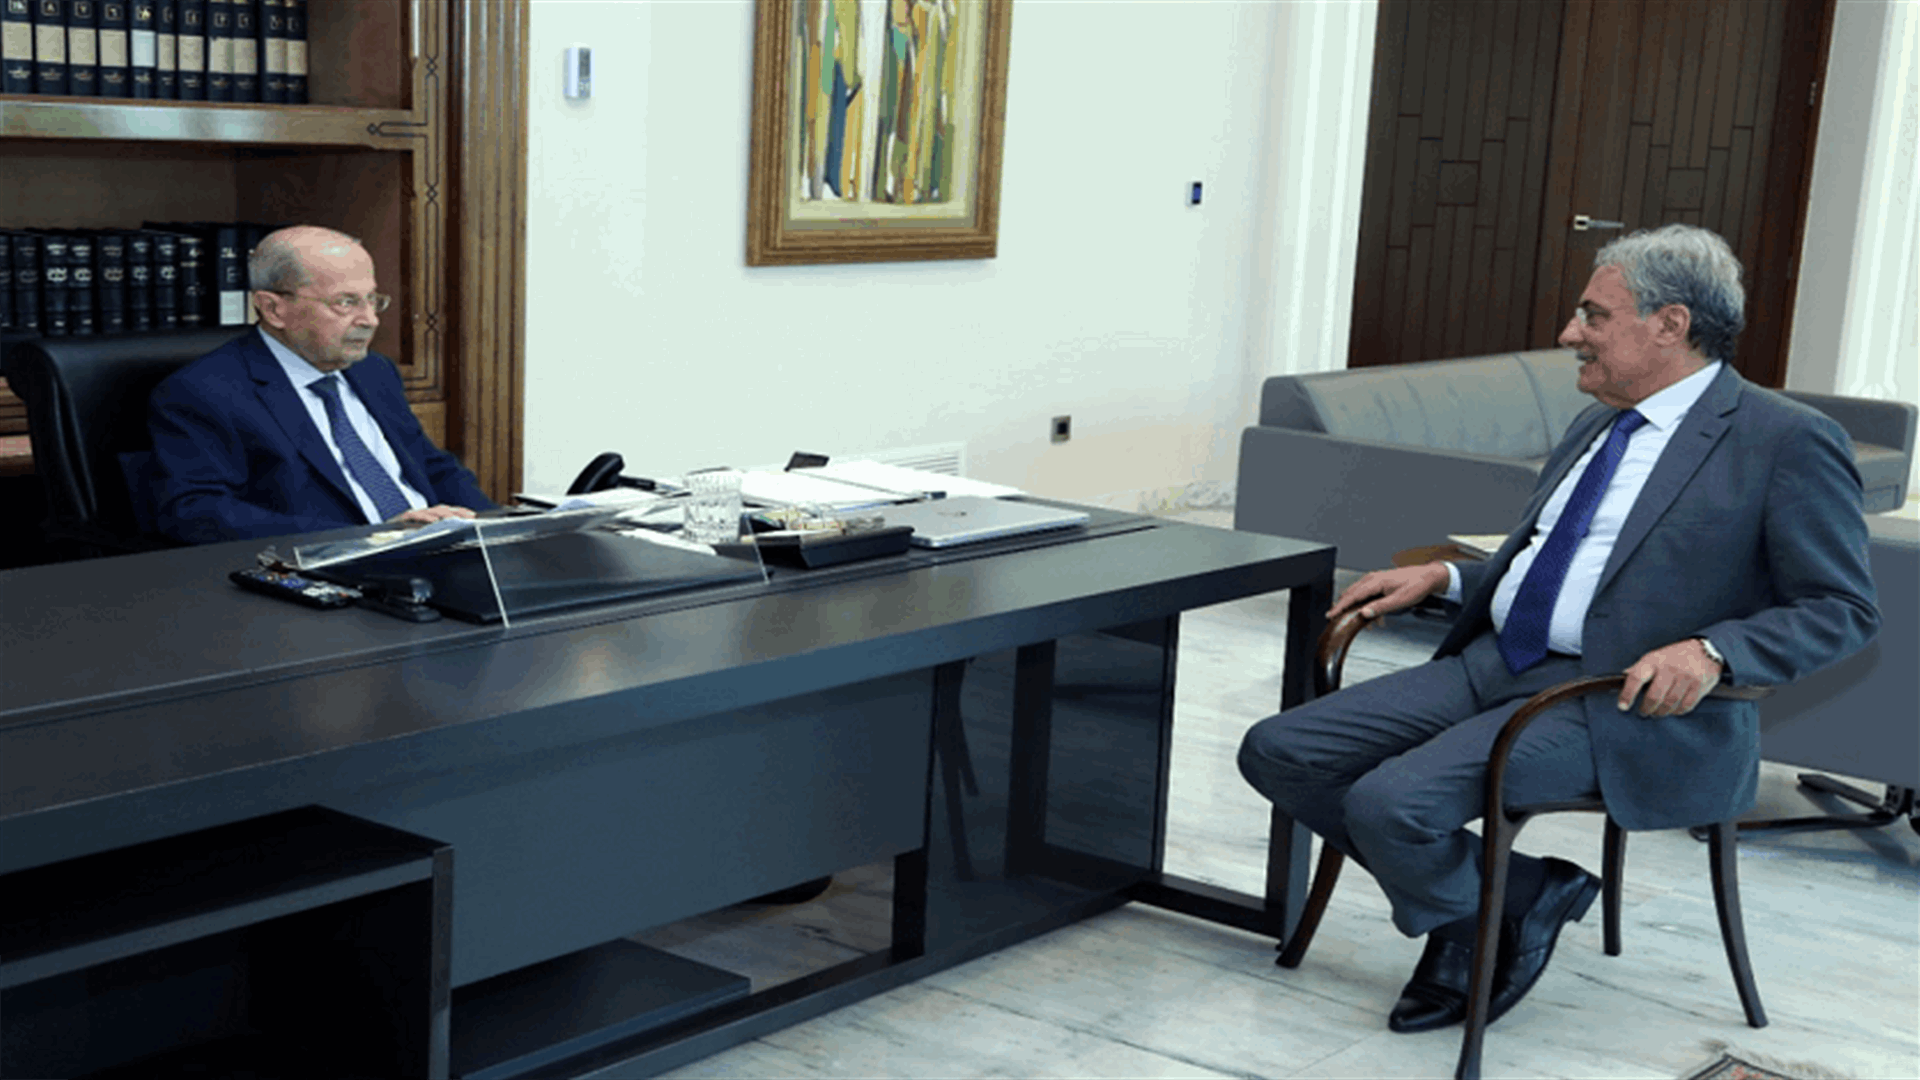 الوزير خوري أعاد إلى مجلس القضاء الأعلى مجدداً مشروع مرسوم تشكيلات رؤساء غرف التمييز بعد تقاعد القاضية خوري